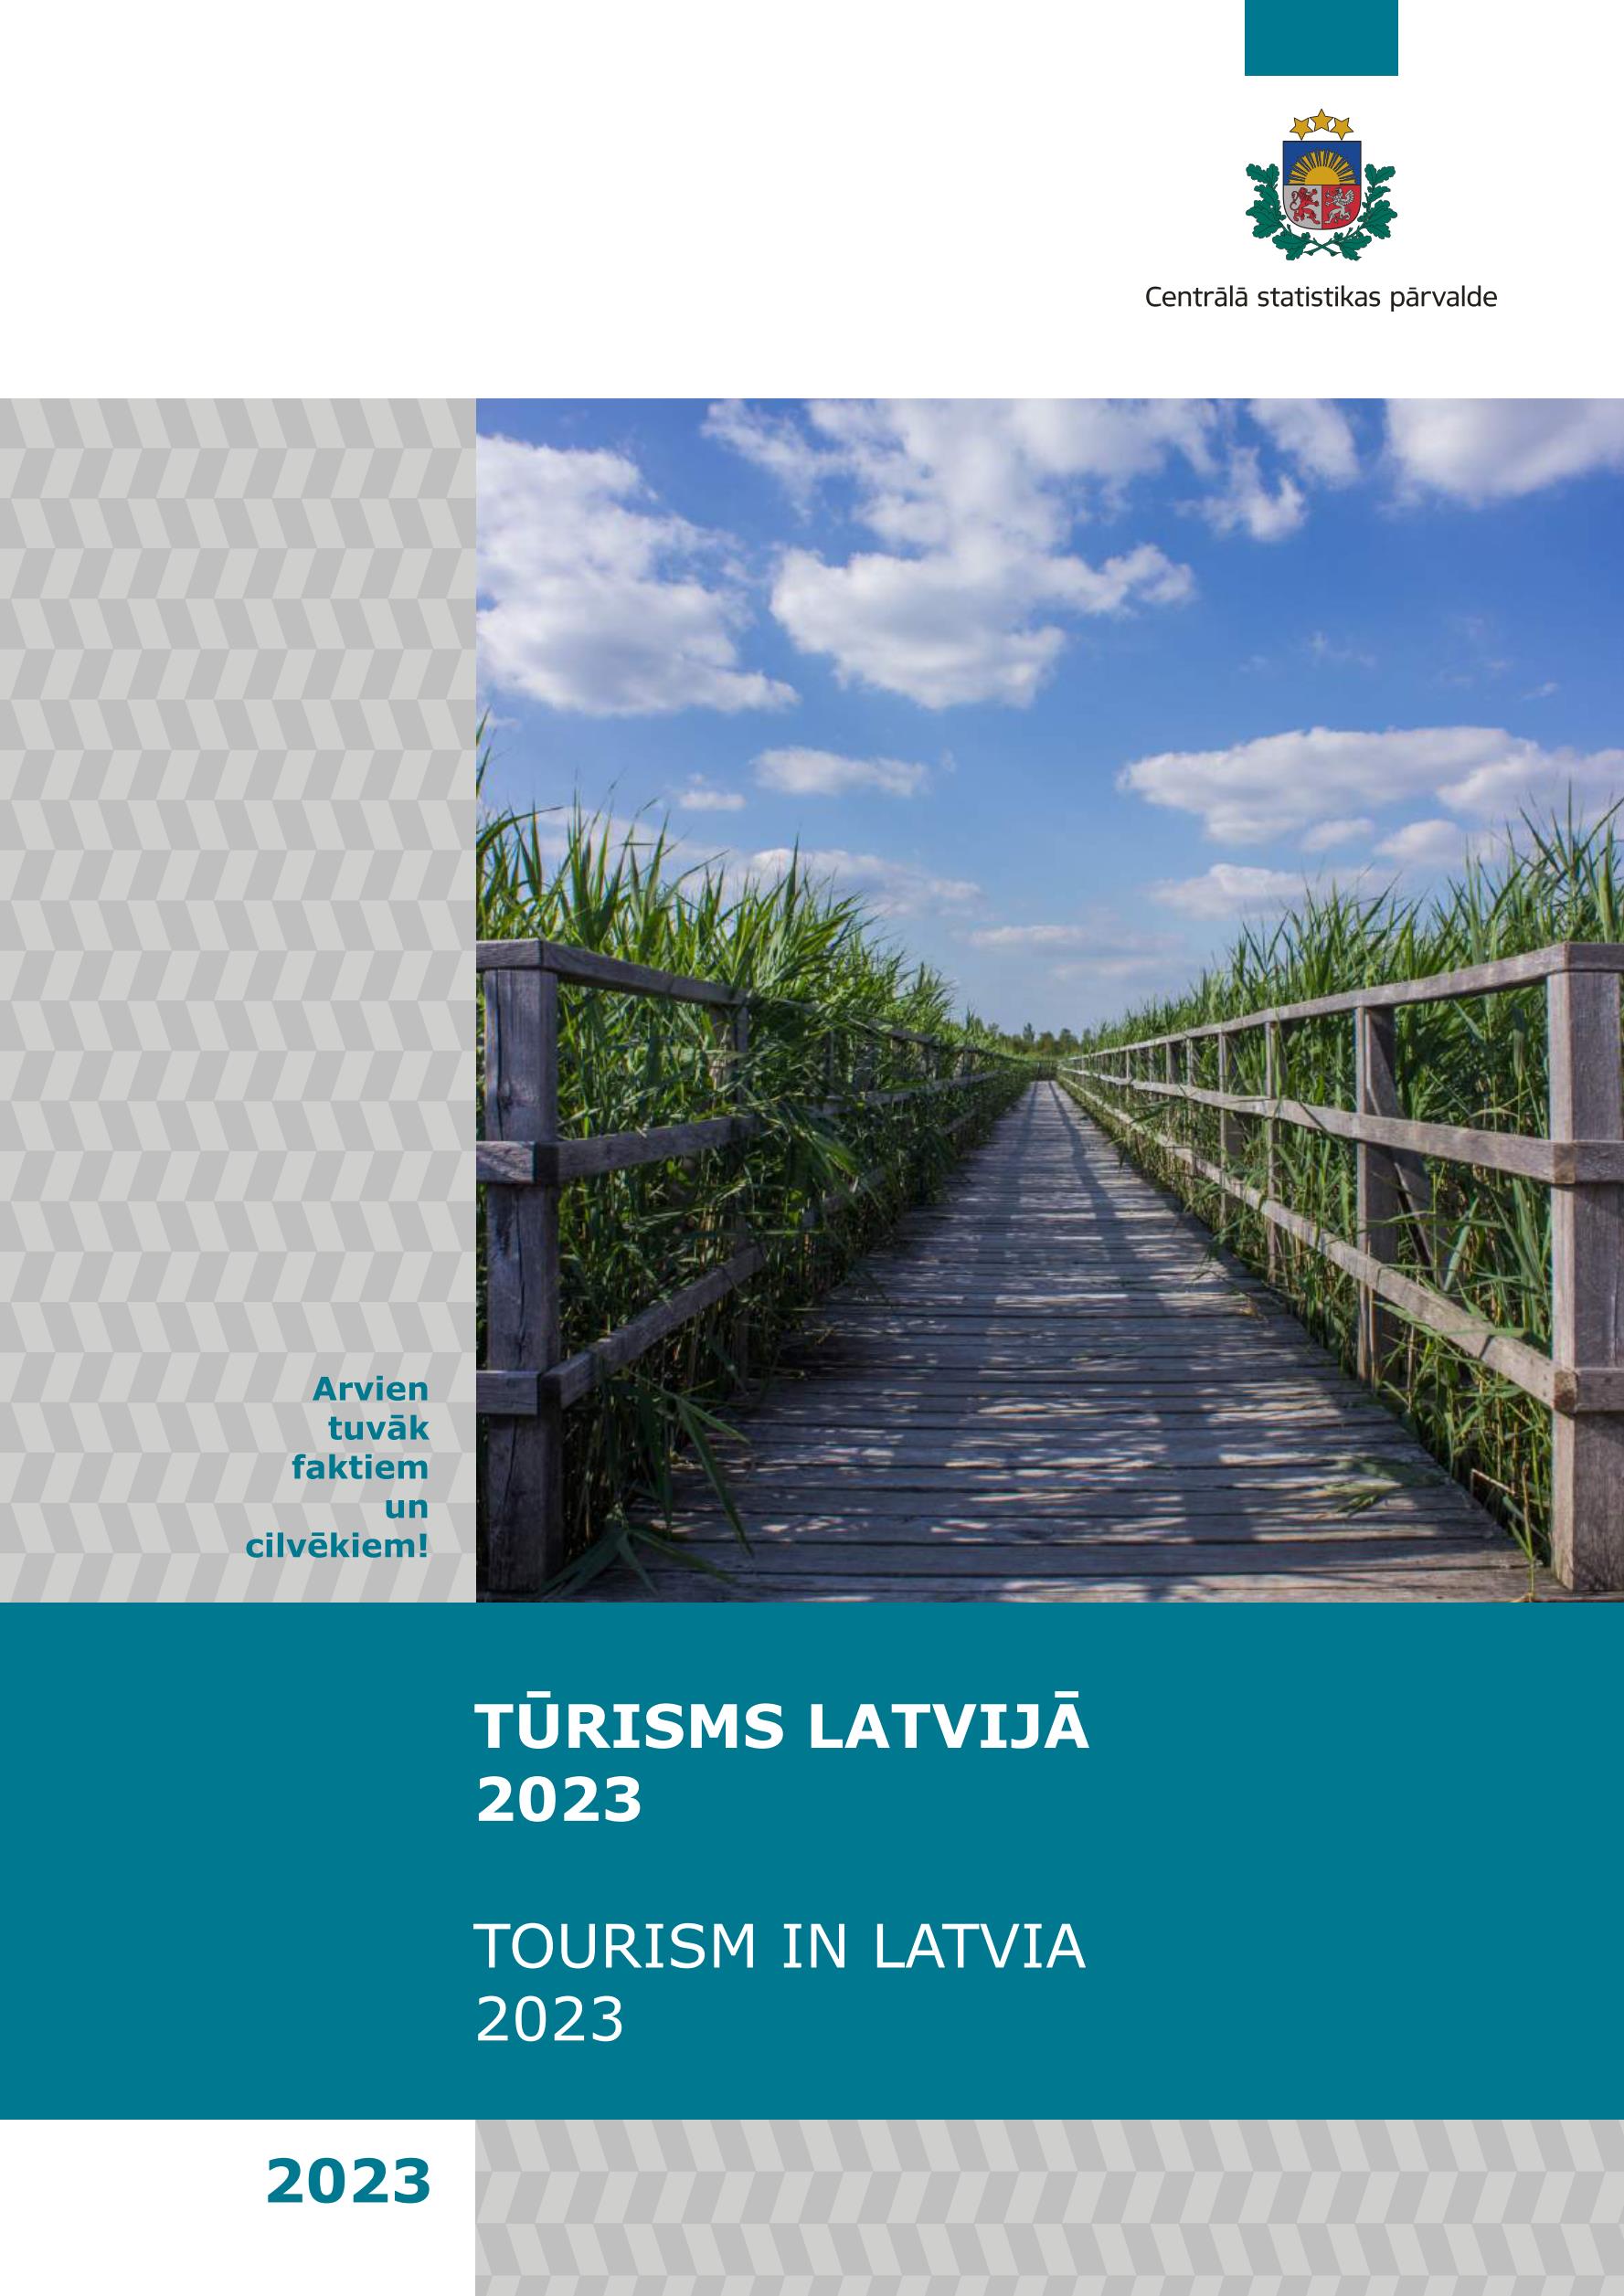 拉脱维亚感官公园里的人行步道与观景平台-Didzis Jaunzems Architecture-道路案例-筑龙园林景观论坛